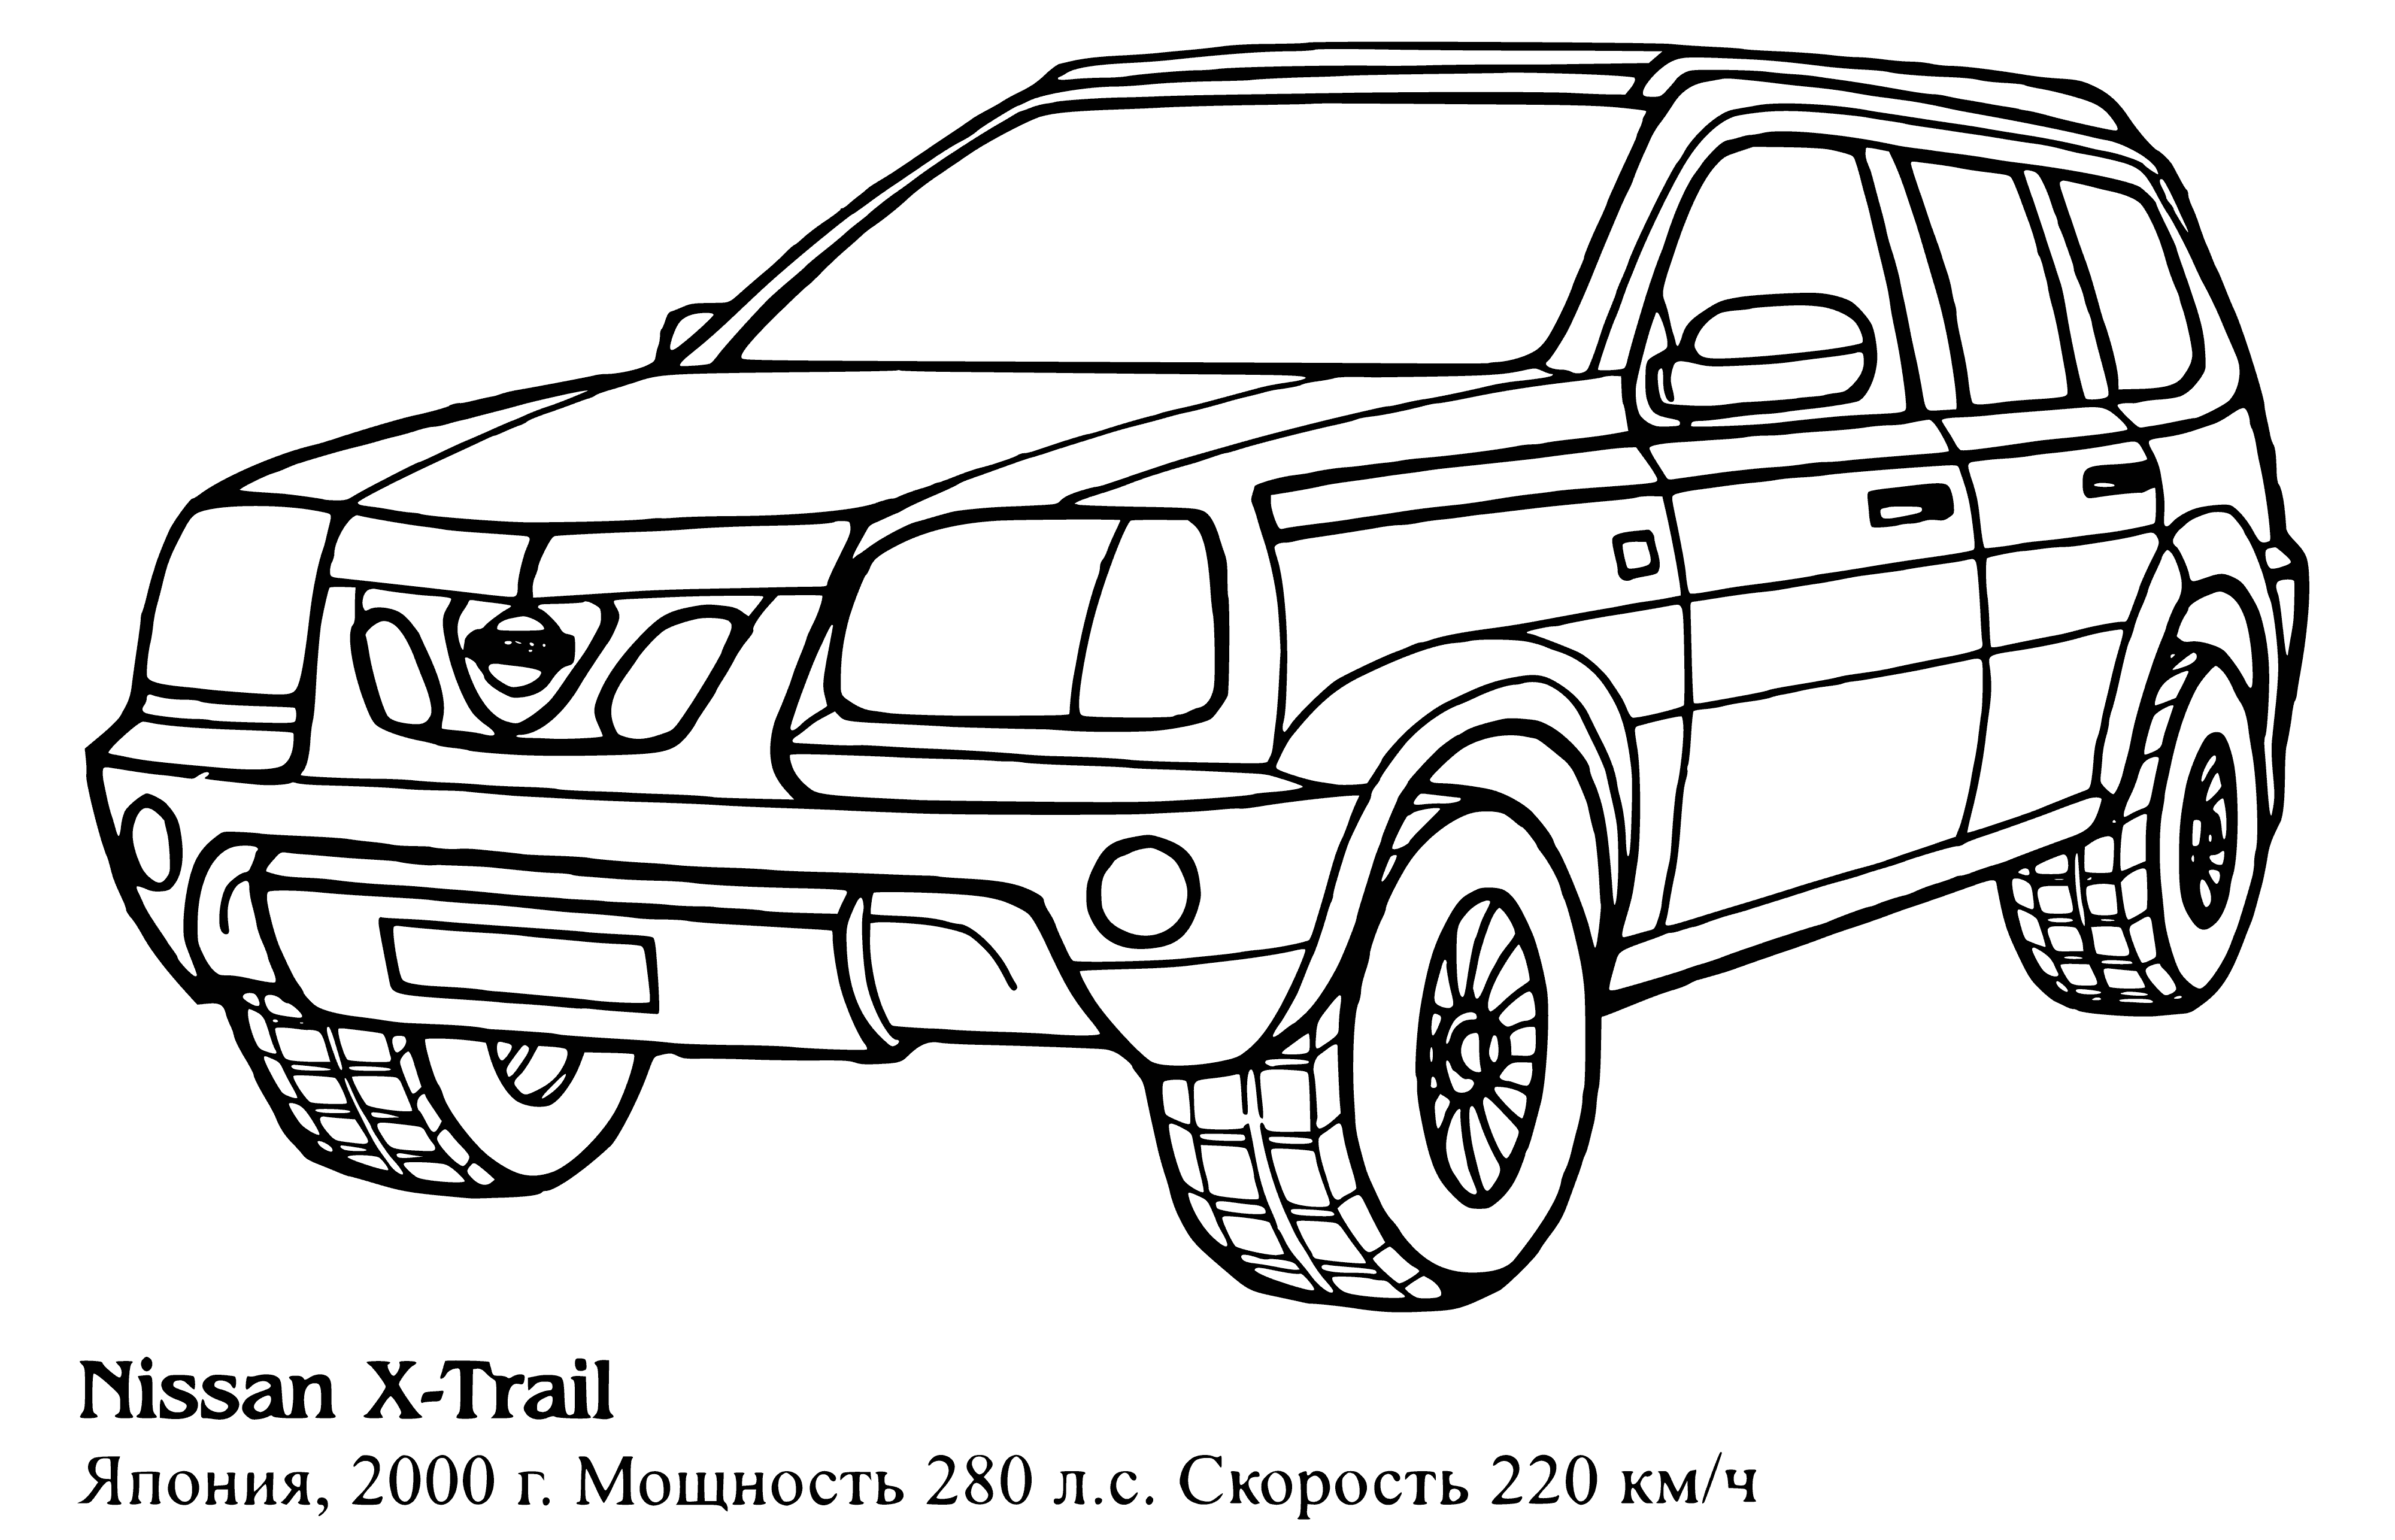 Nissan X-Trail boyama sayfası